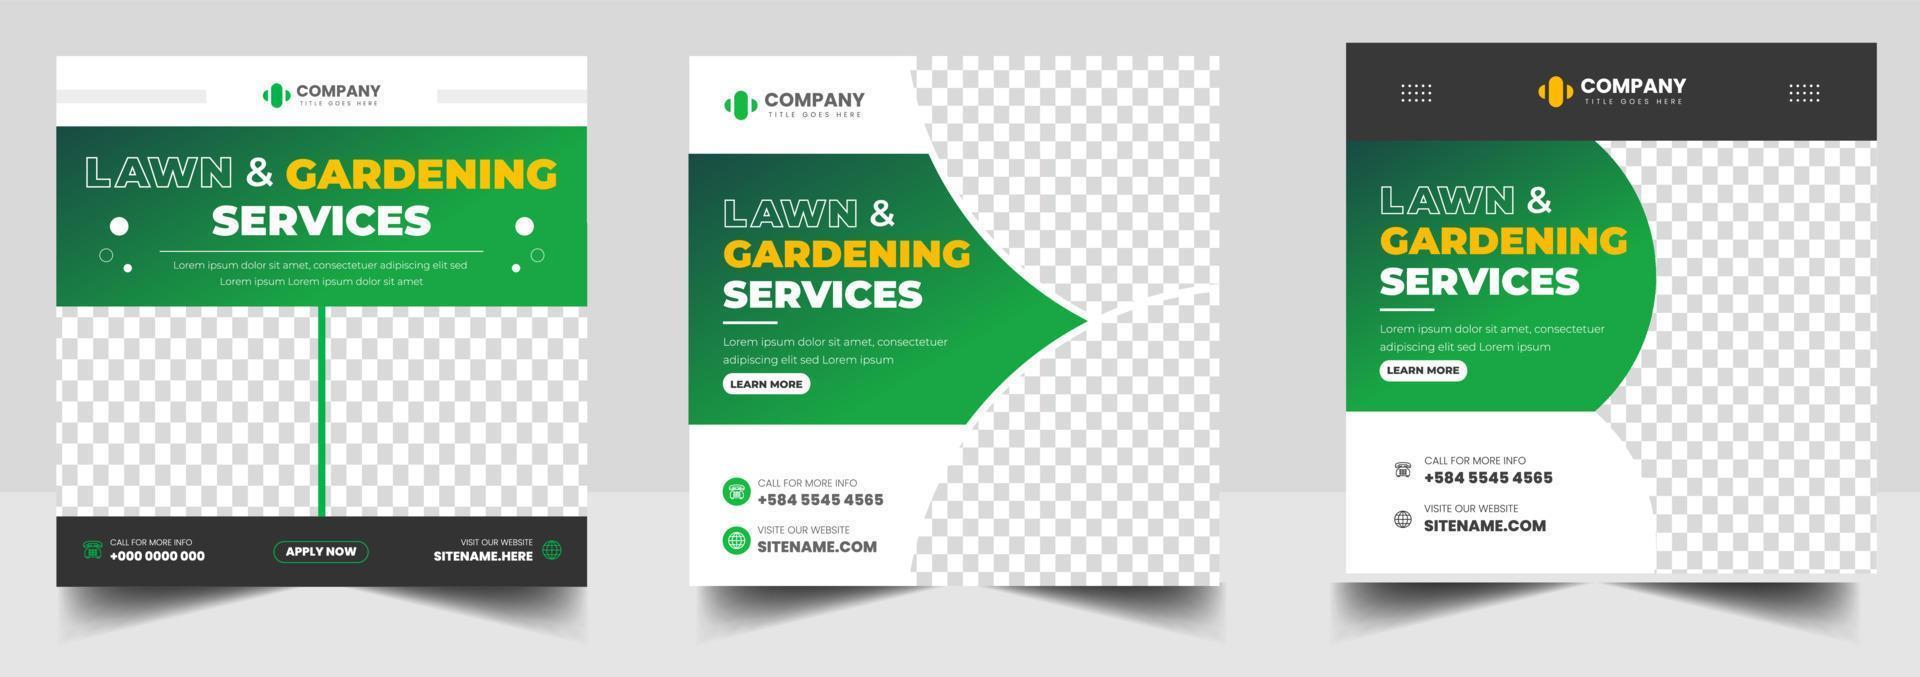 Rasengarten-Service-Social-Media-Post-Banner-Design-Vorlage mit grüner Farbe, Plantagen- und Rasenmähen und Gartendienst-Banner-Design. Rasengarten-Service-Banner. vektor